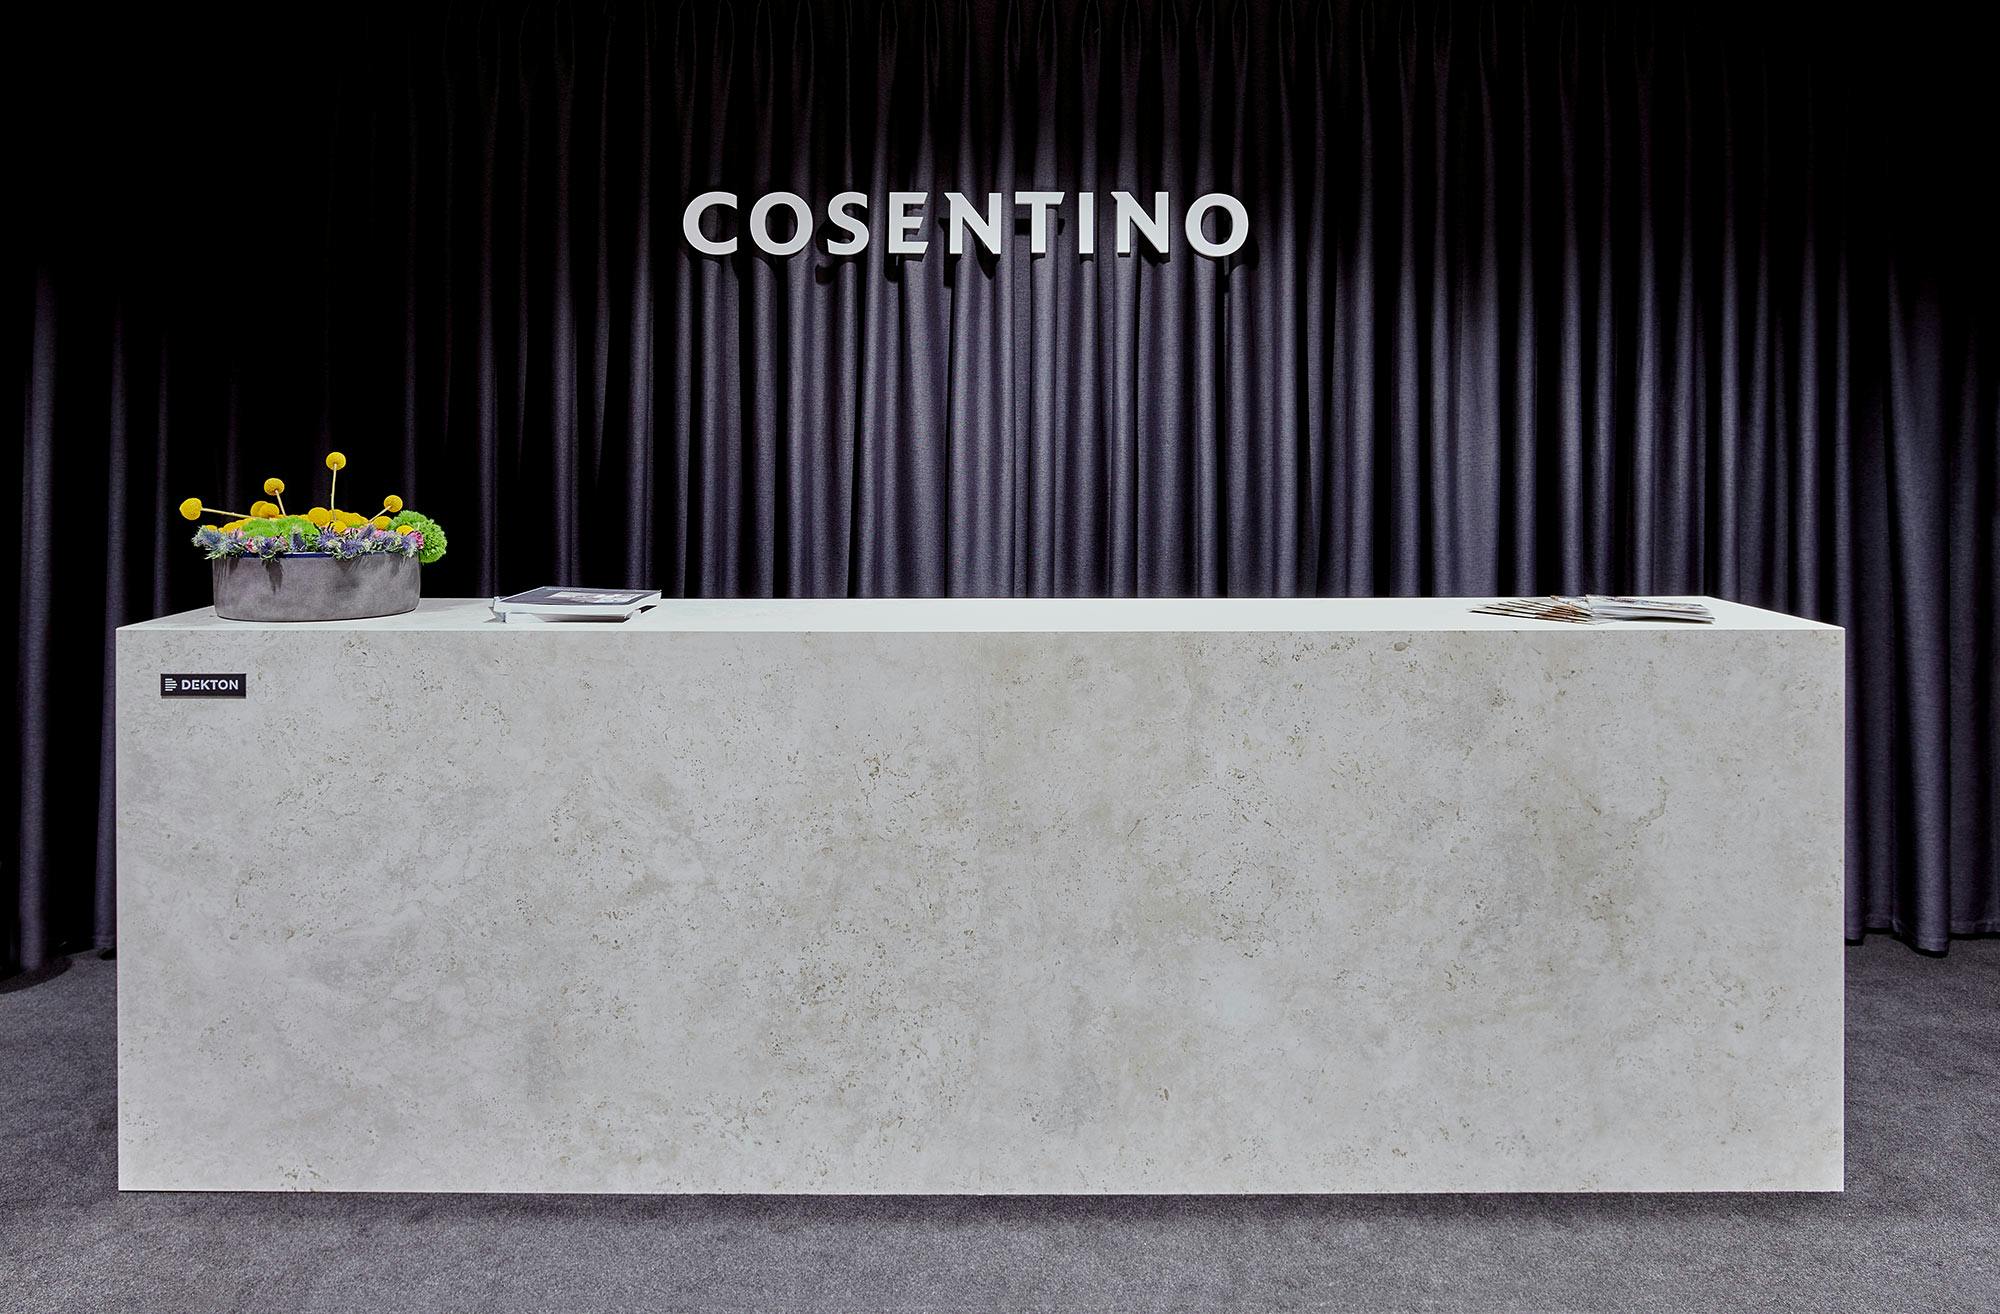 Image of Cosentino Mutua Madrid006 dEKTO SABBIA 1.jpg?auto=format%2Ccompress&ixlib=php 3.3 in A contemporary public toilet design inspired by Roman public baths - Cosentino